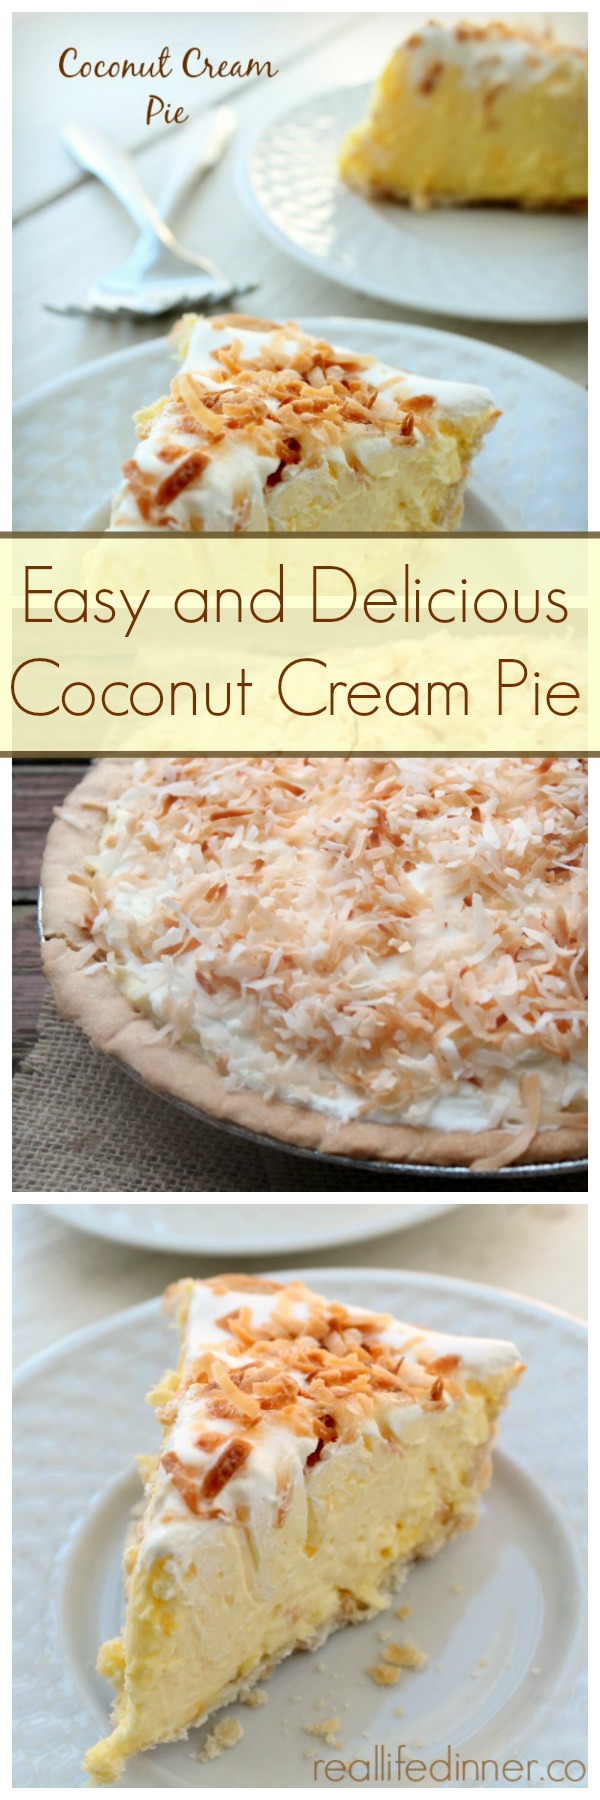 Coconut Cream Pie Recipe Collage 2